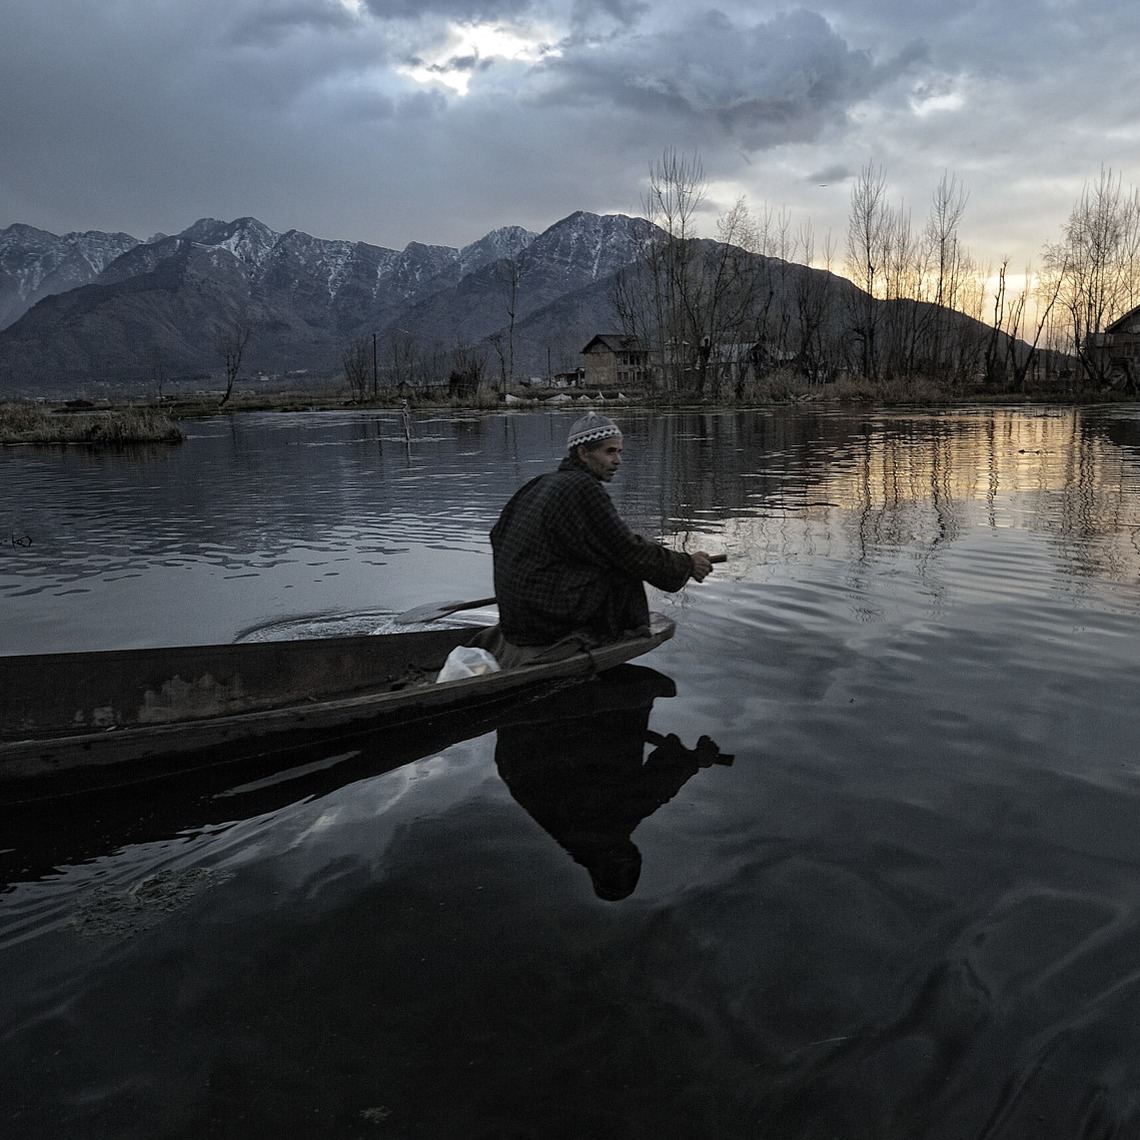 Srinagar, lungo lago, nord India, viaggio fotografico, fotografia, fotografo, workshop